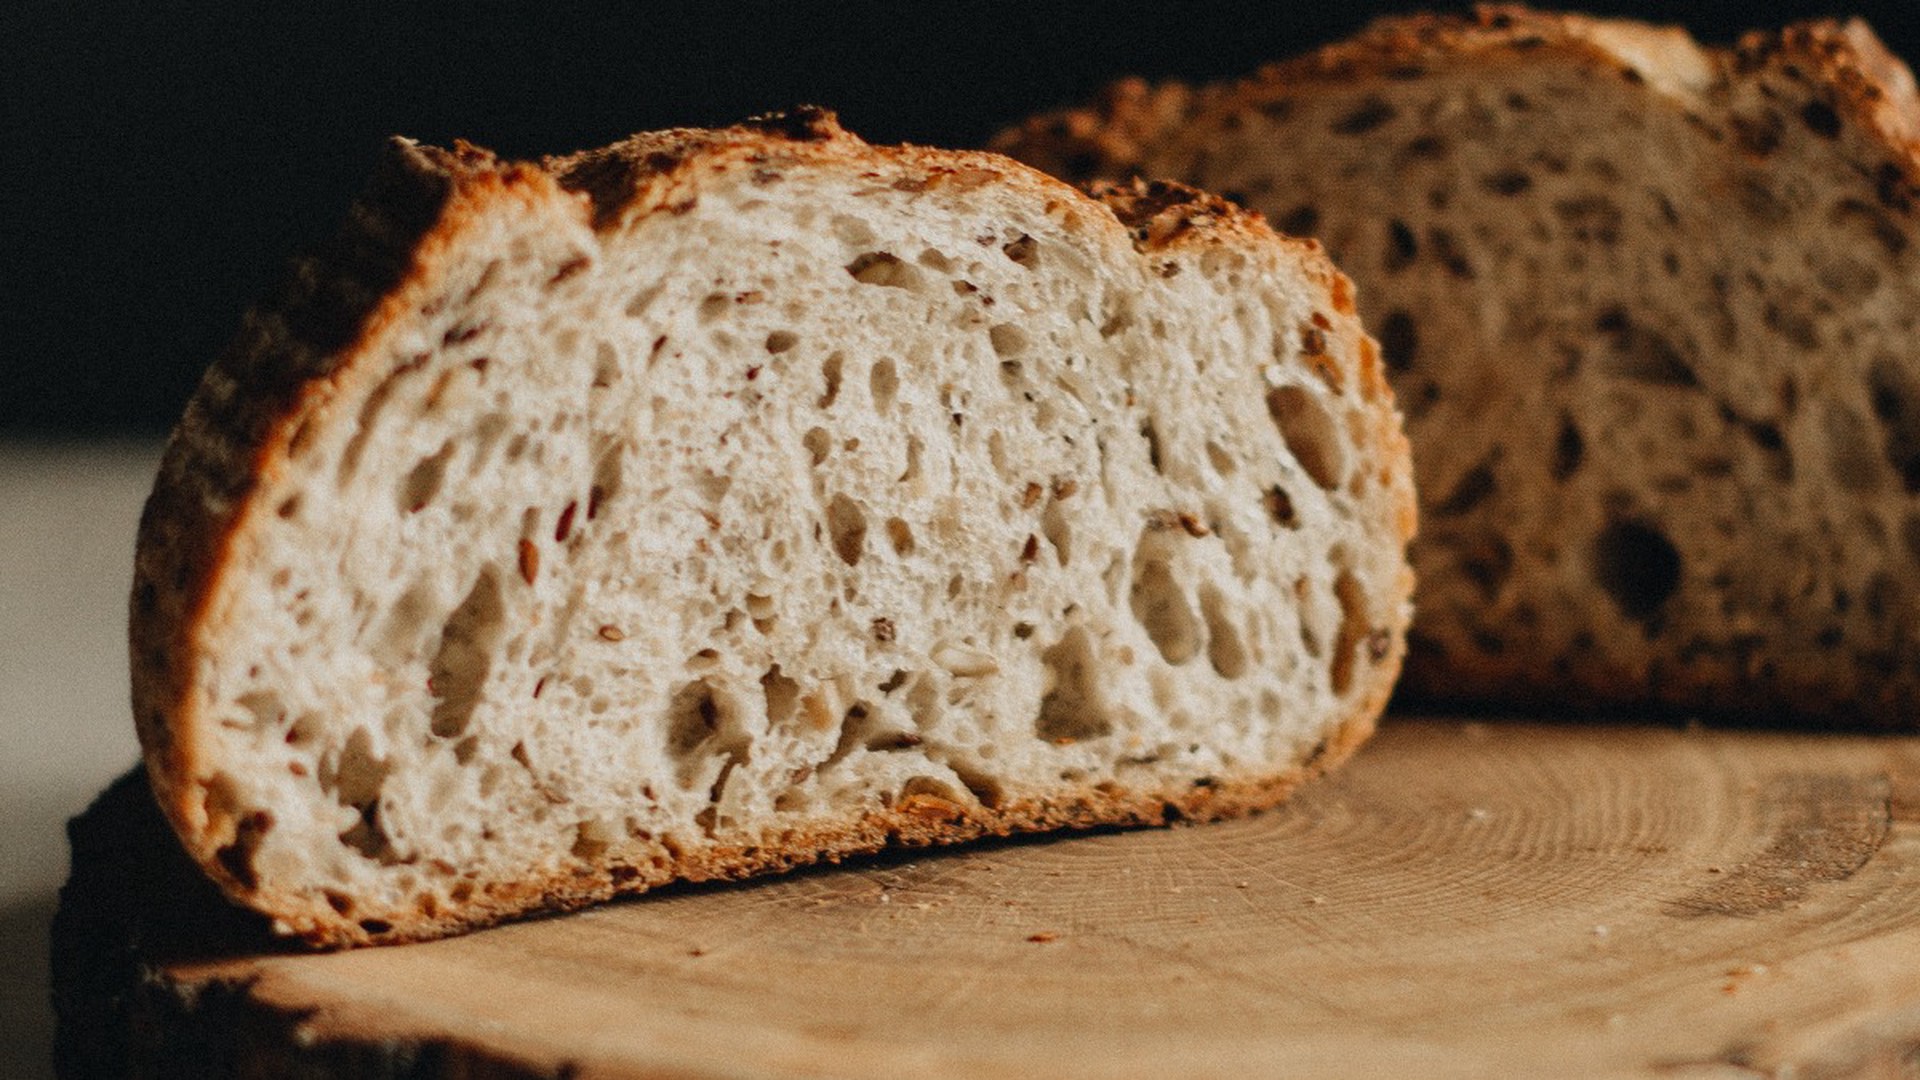 Иммунолог Паршина рассказала, чем может быть вреден хлеб в нарезке